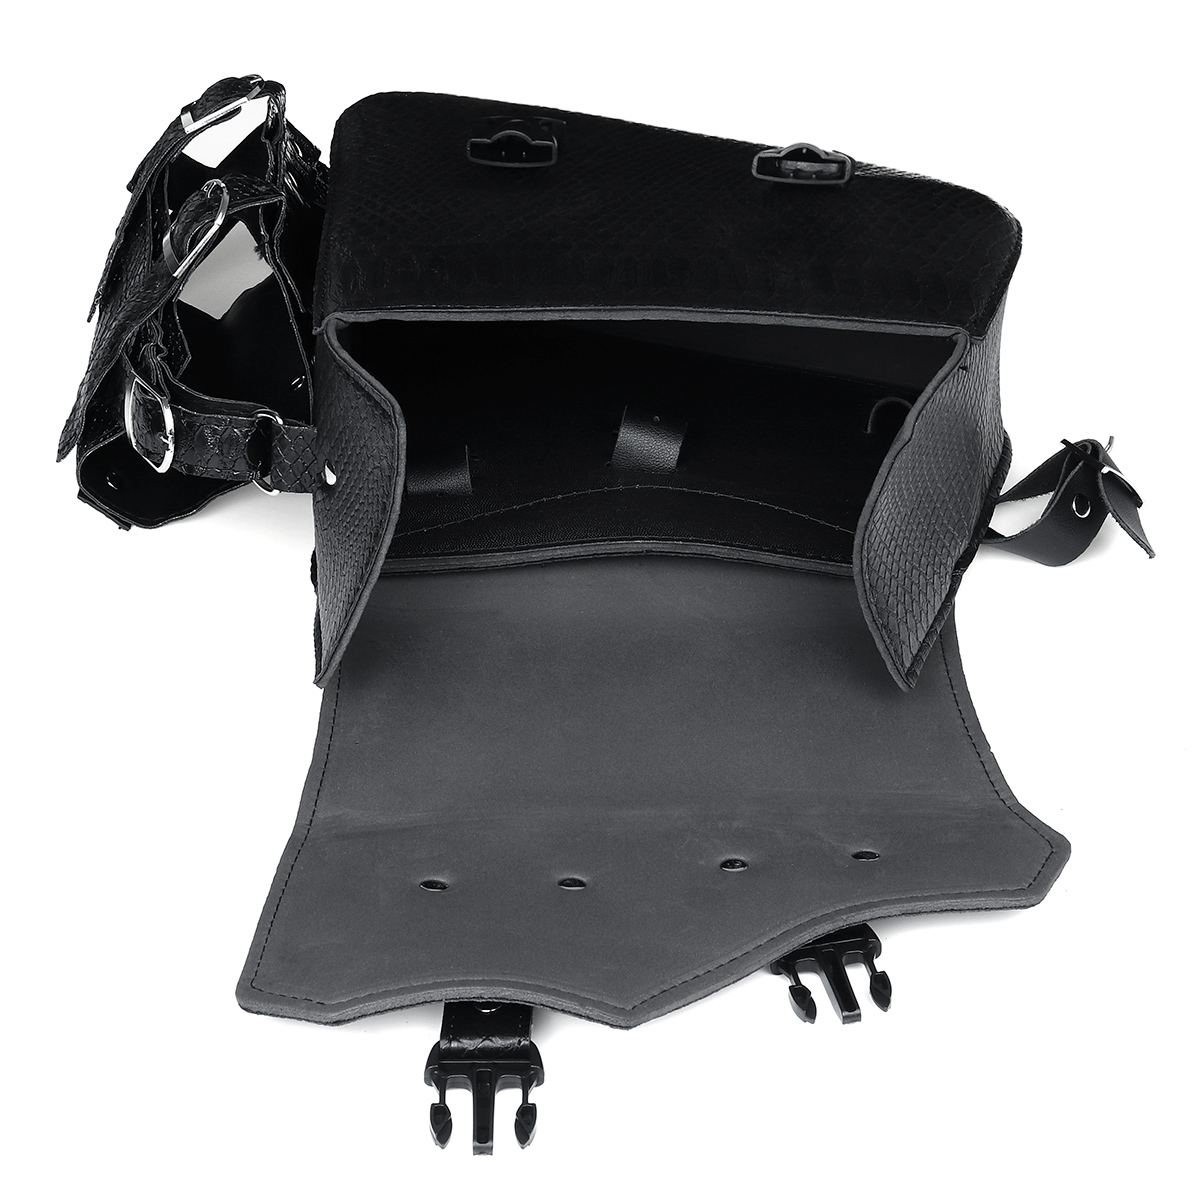 Motorcycle Saddlebag Tool Bag Luggage with Bottle Holder Left / Right Side Black - Auto GoShop